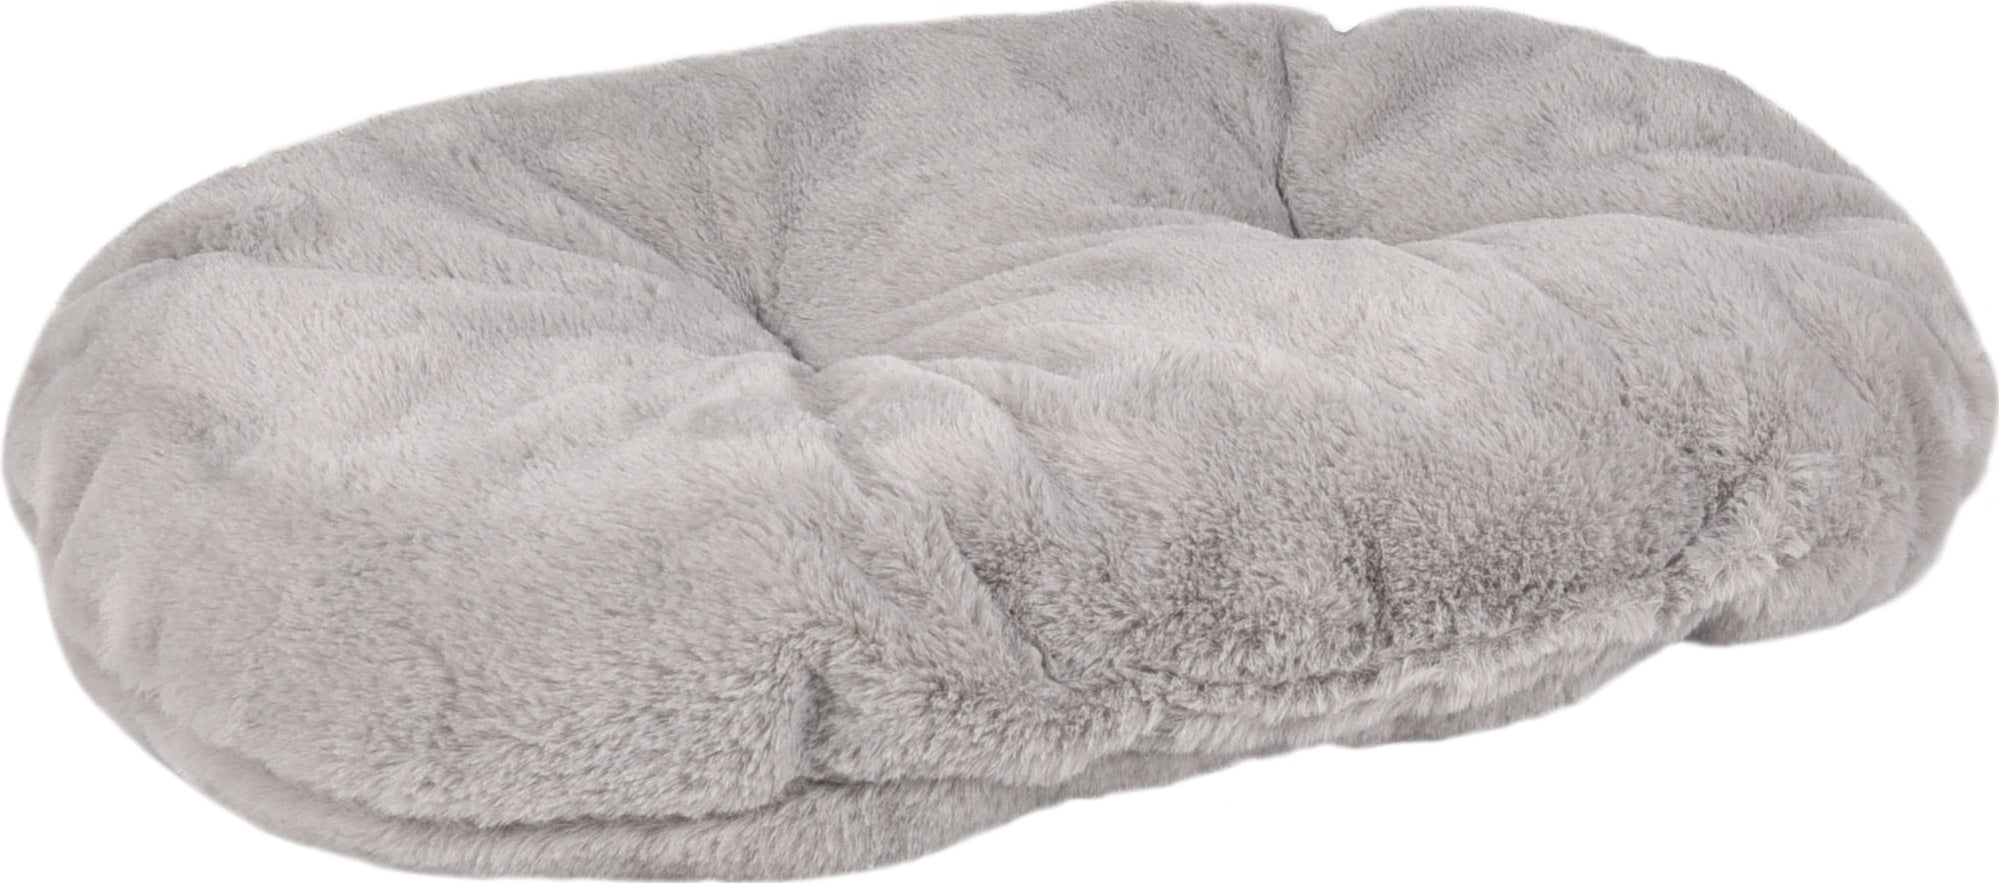 Hondenmand Xepp textiel ovaal grijs - Huisdierplezier